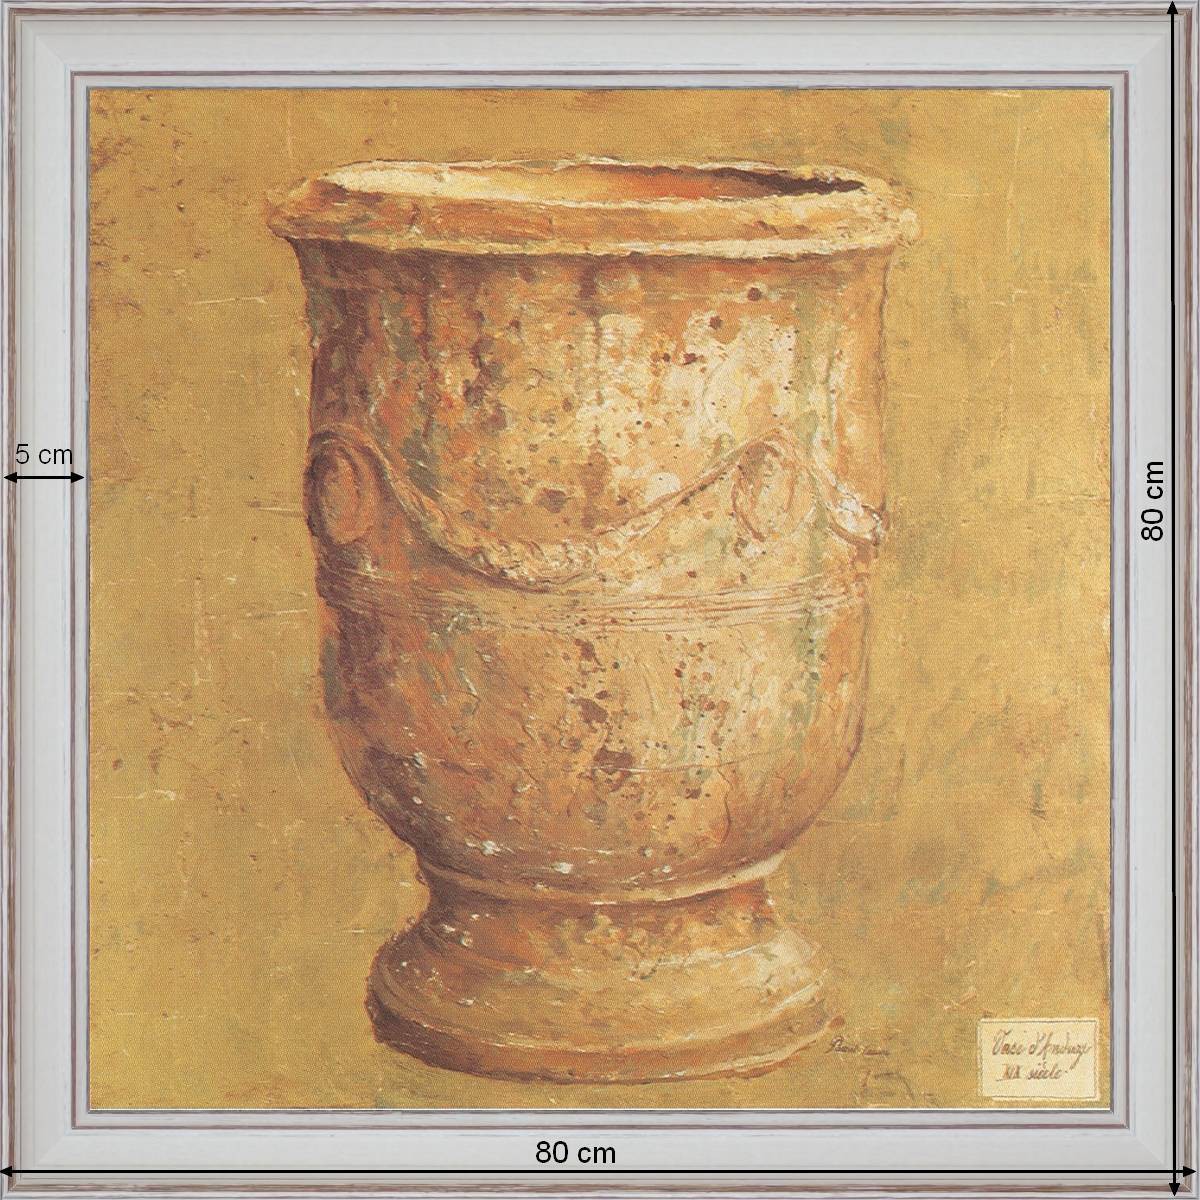 Vase d'Anduze - dimensions 80 x 80 cm - Blanc cassé